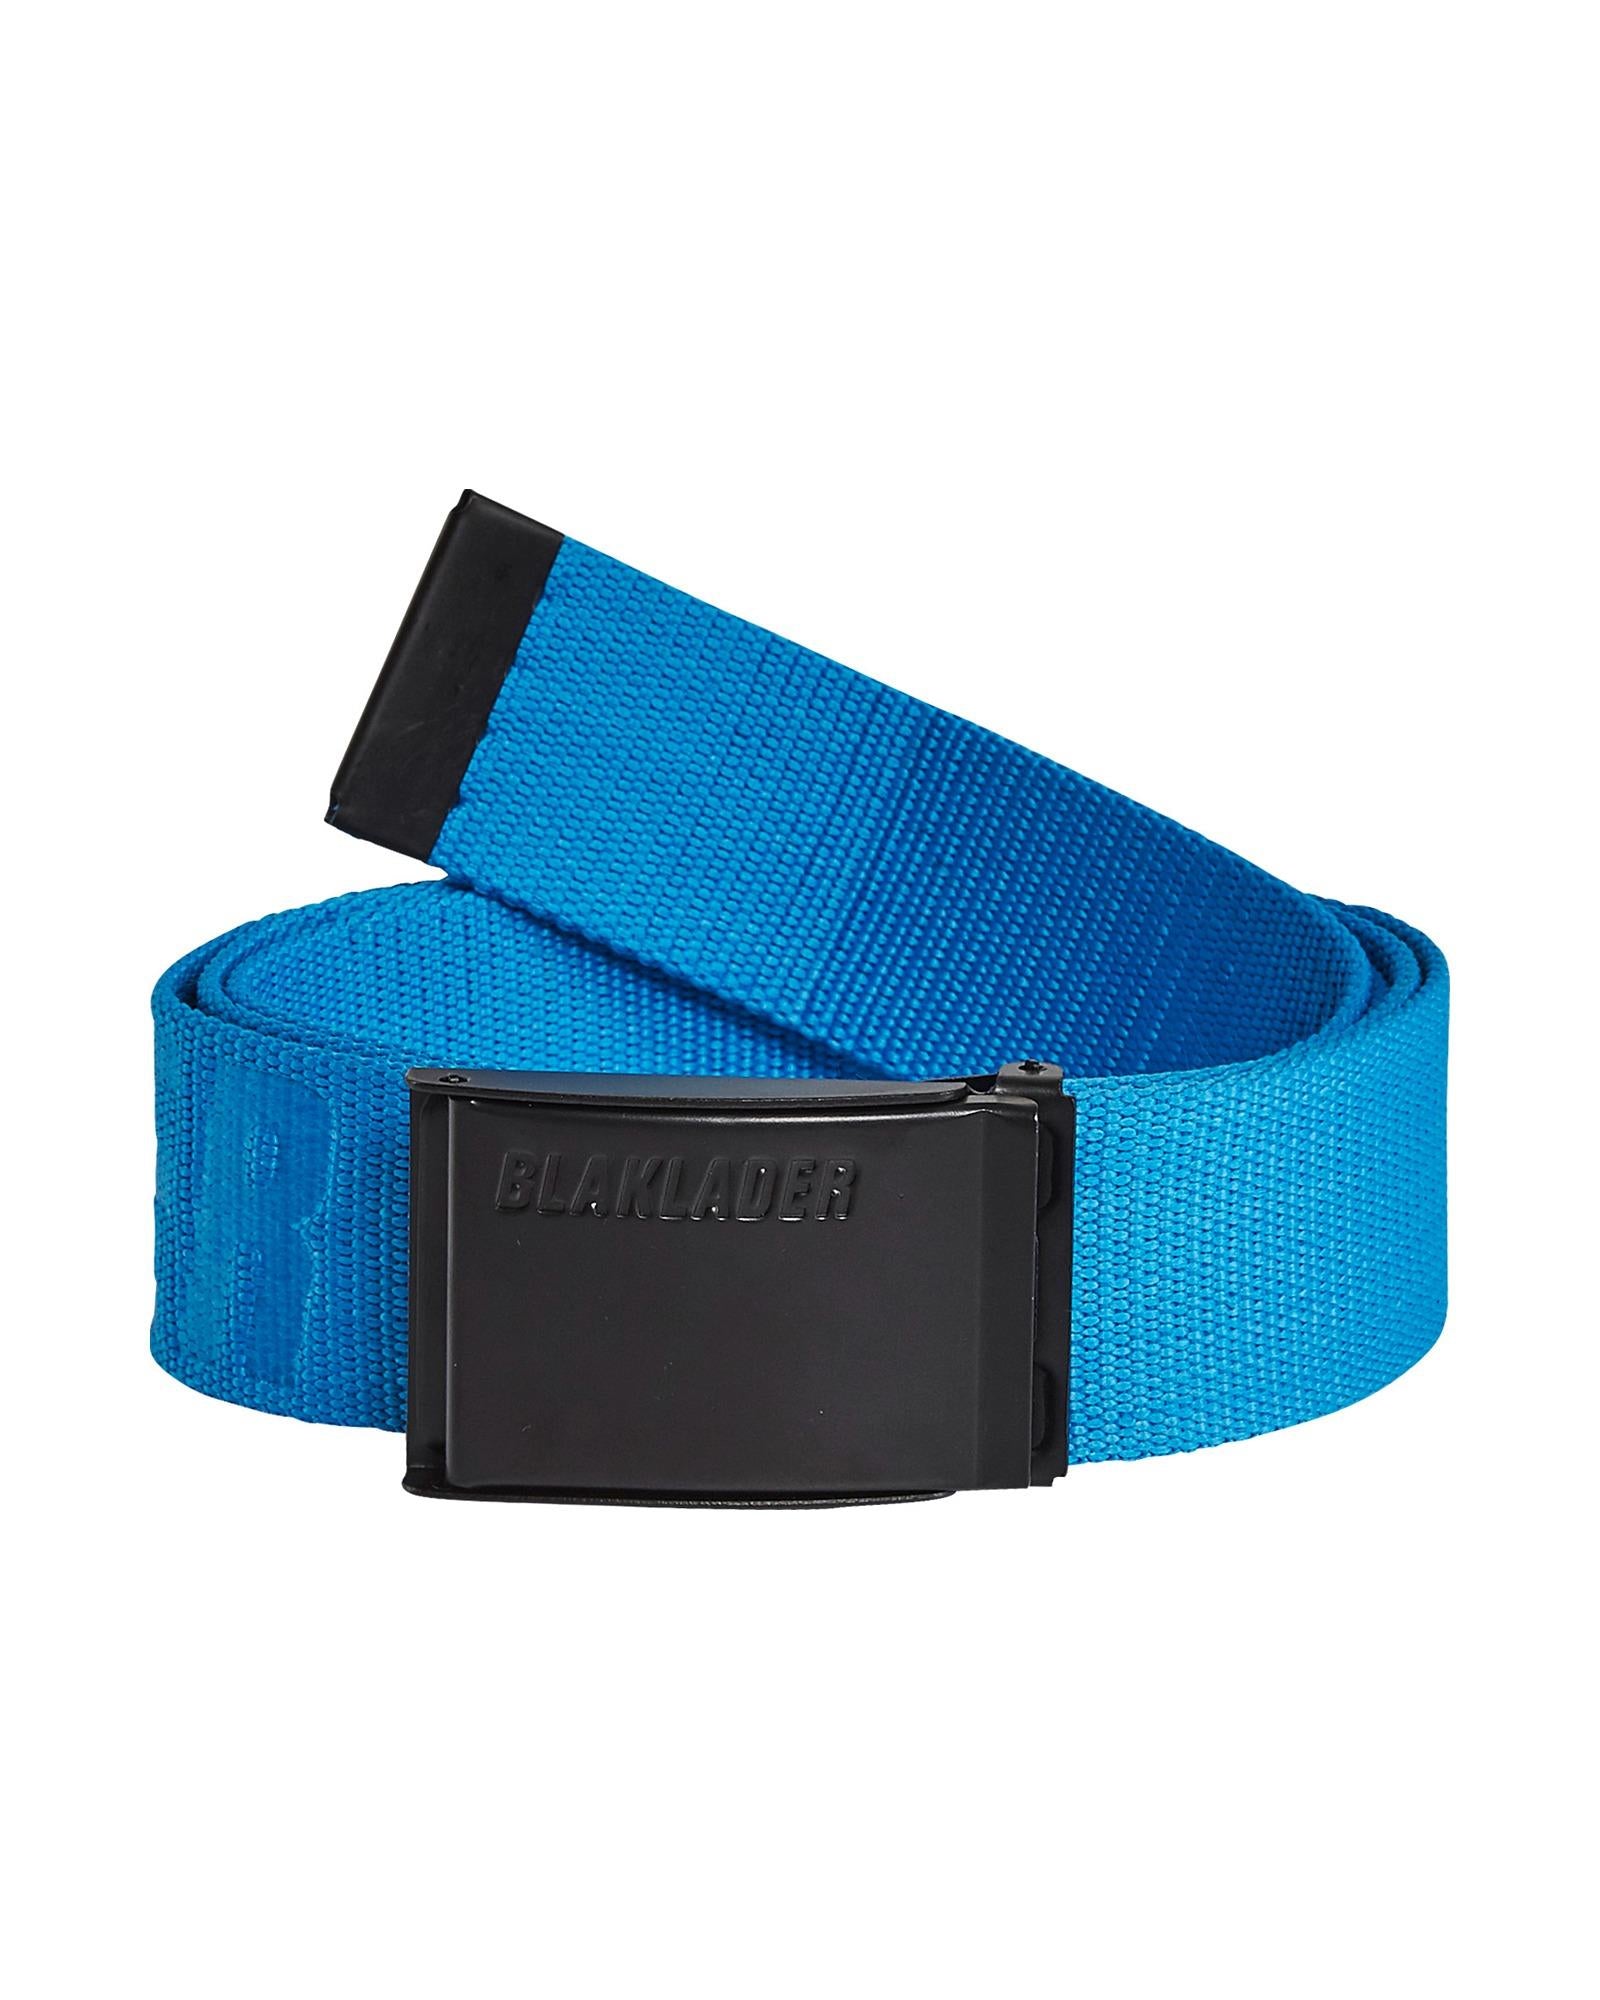 Blaklader ocean blue textile adjustable belt with metal buckle #4034